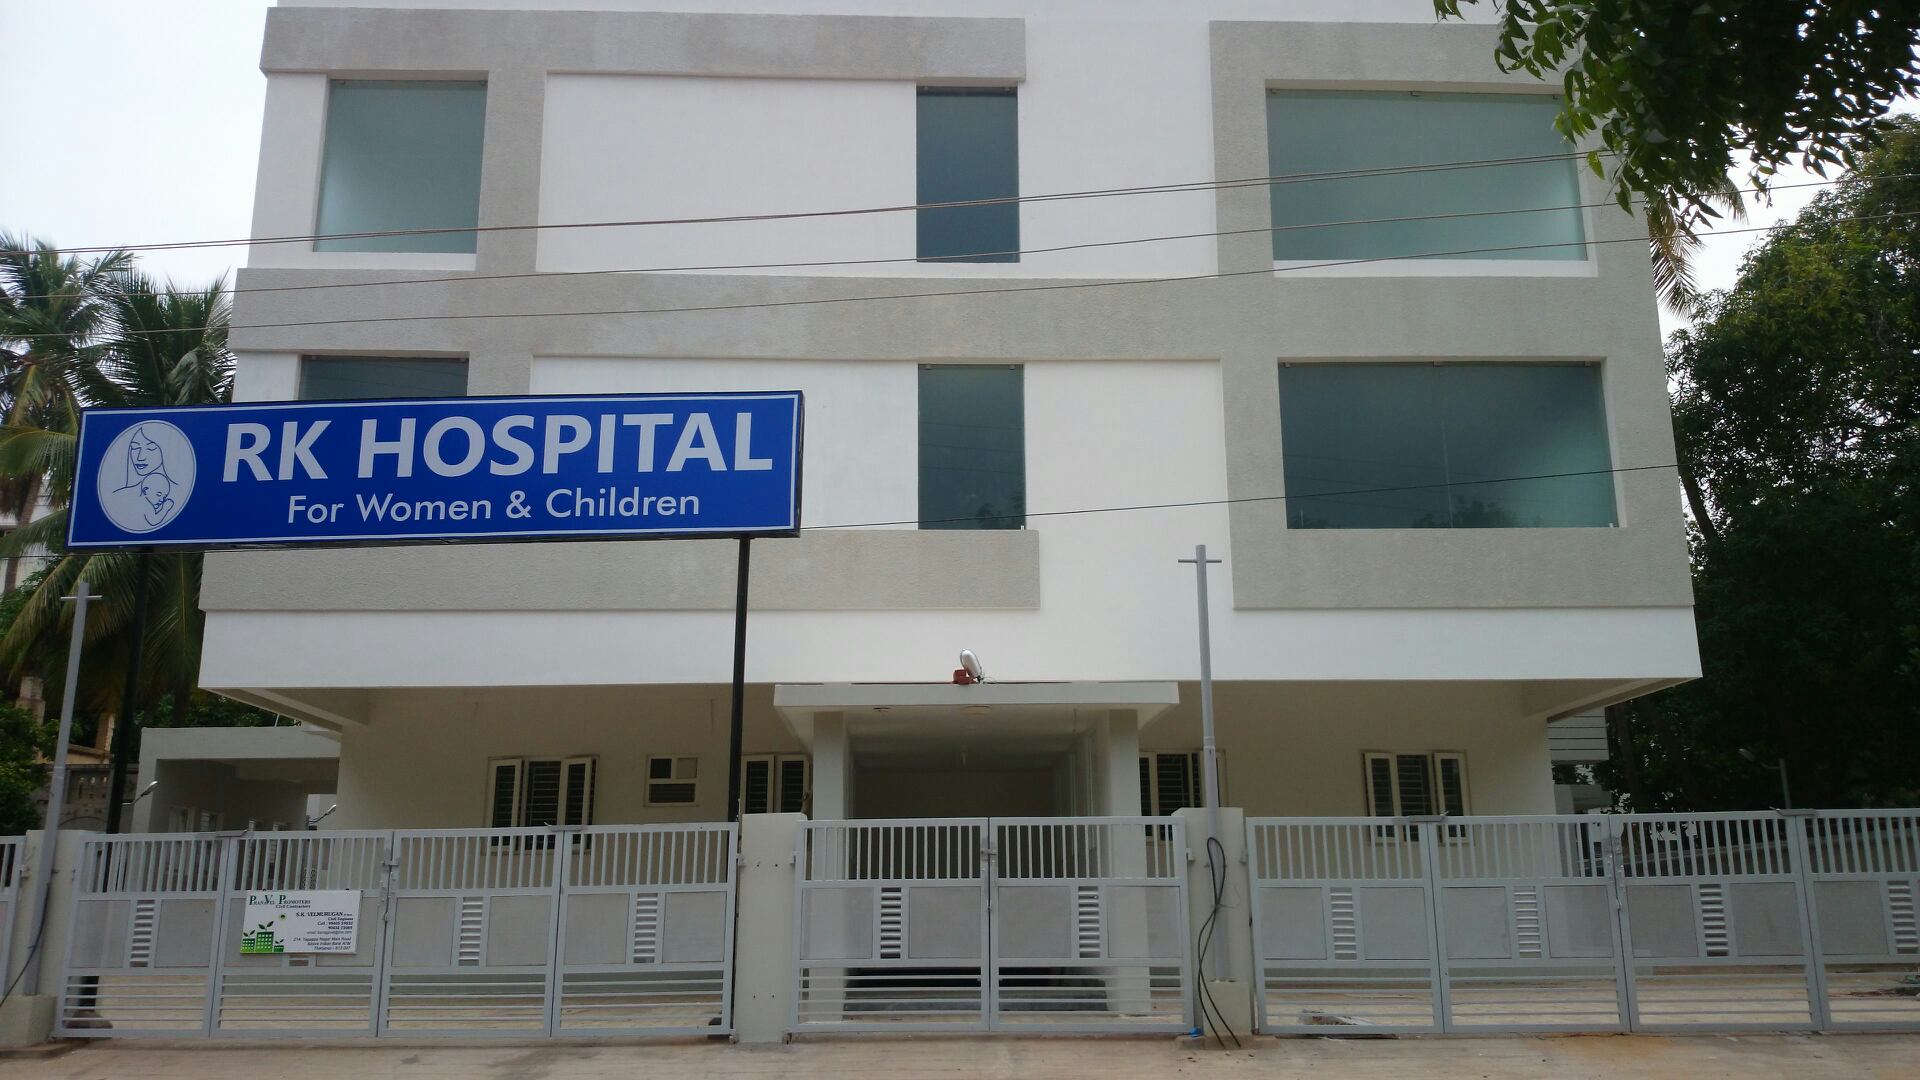 R K Hospital For Women & Children